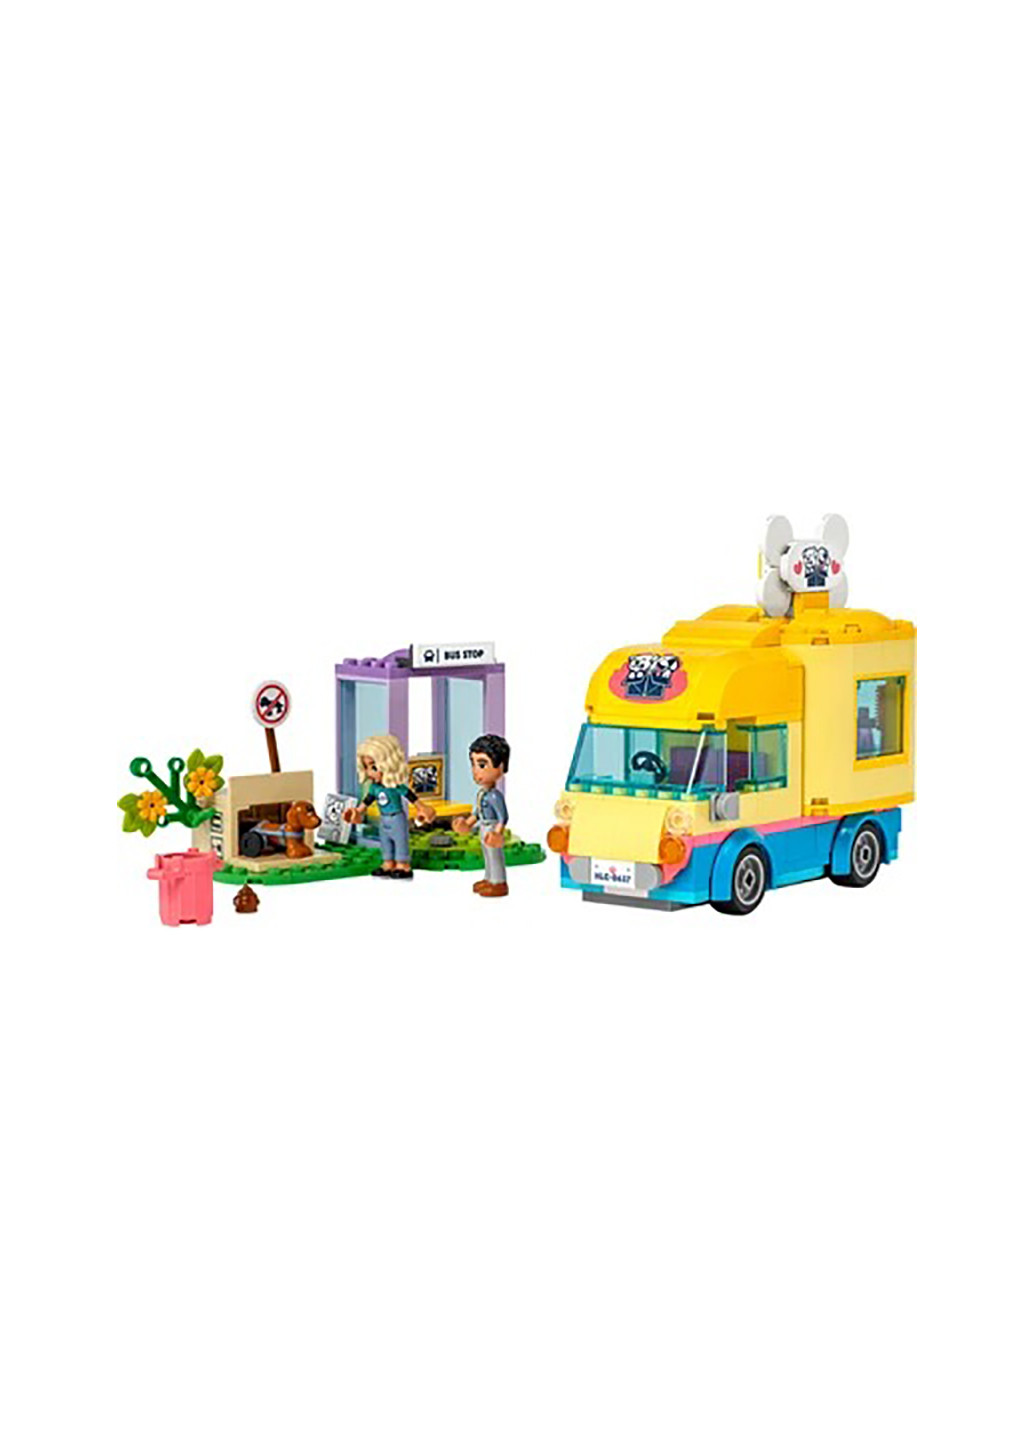 Конструктор Friends Фургон для спасения собак 41741 Lego (257875084)